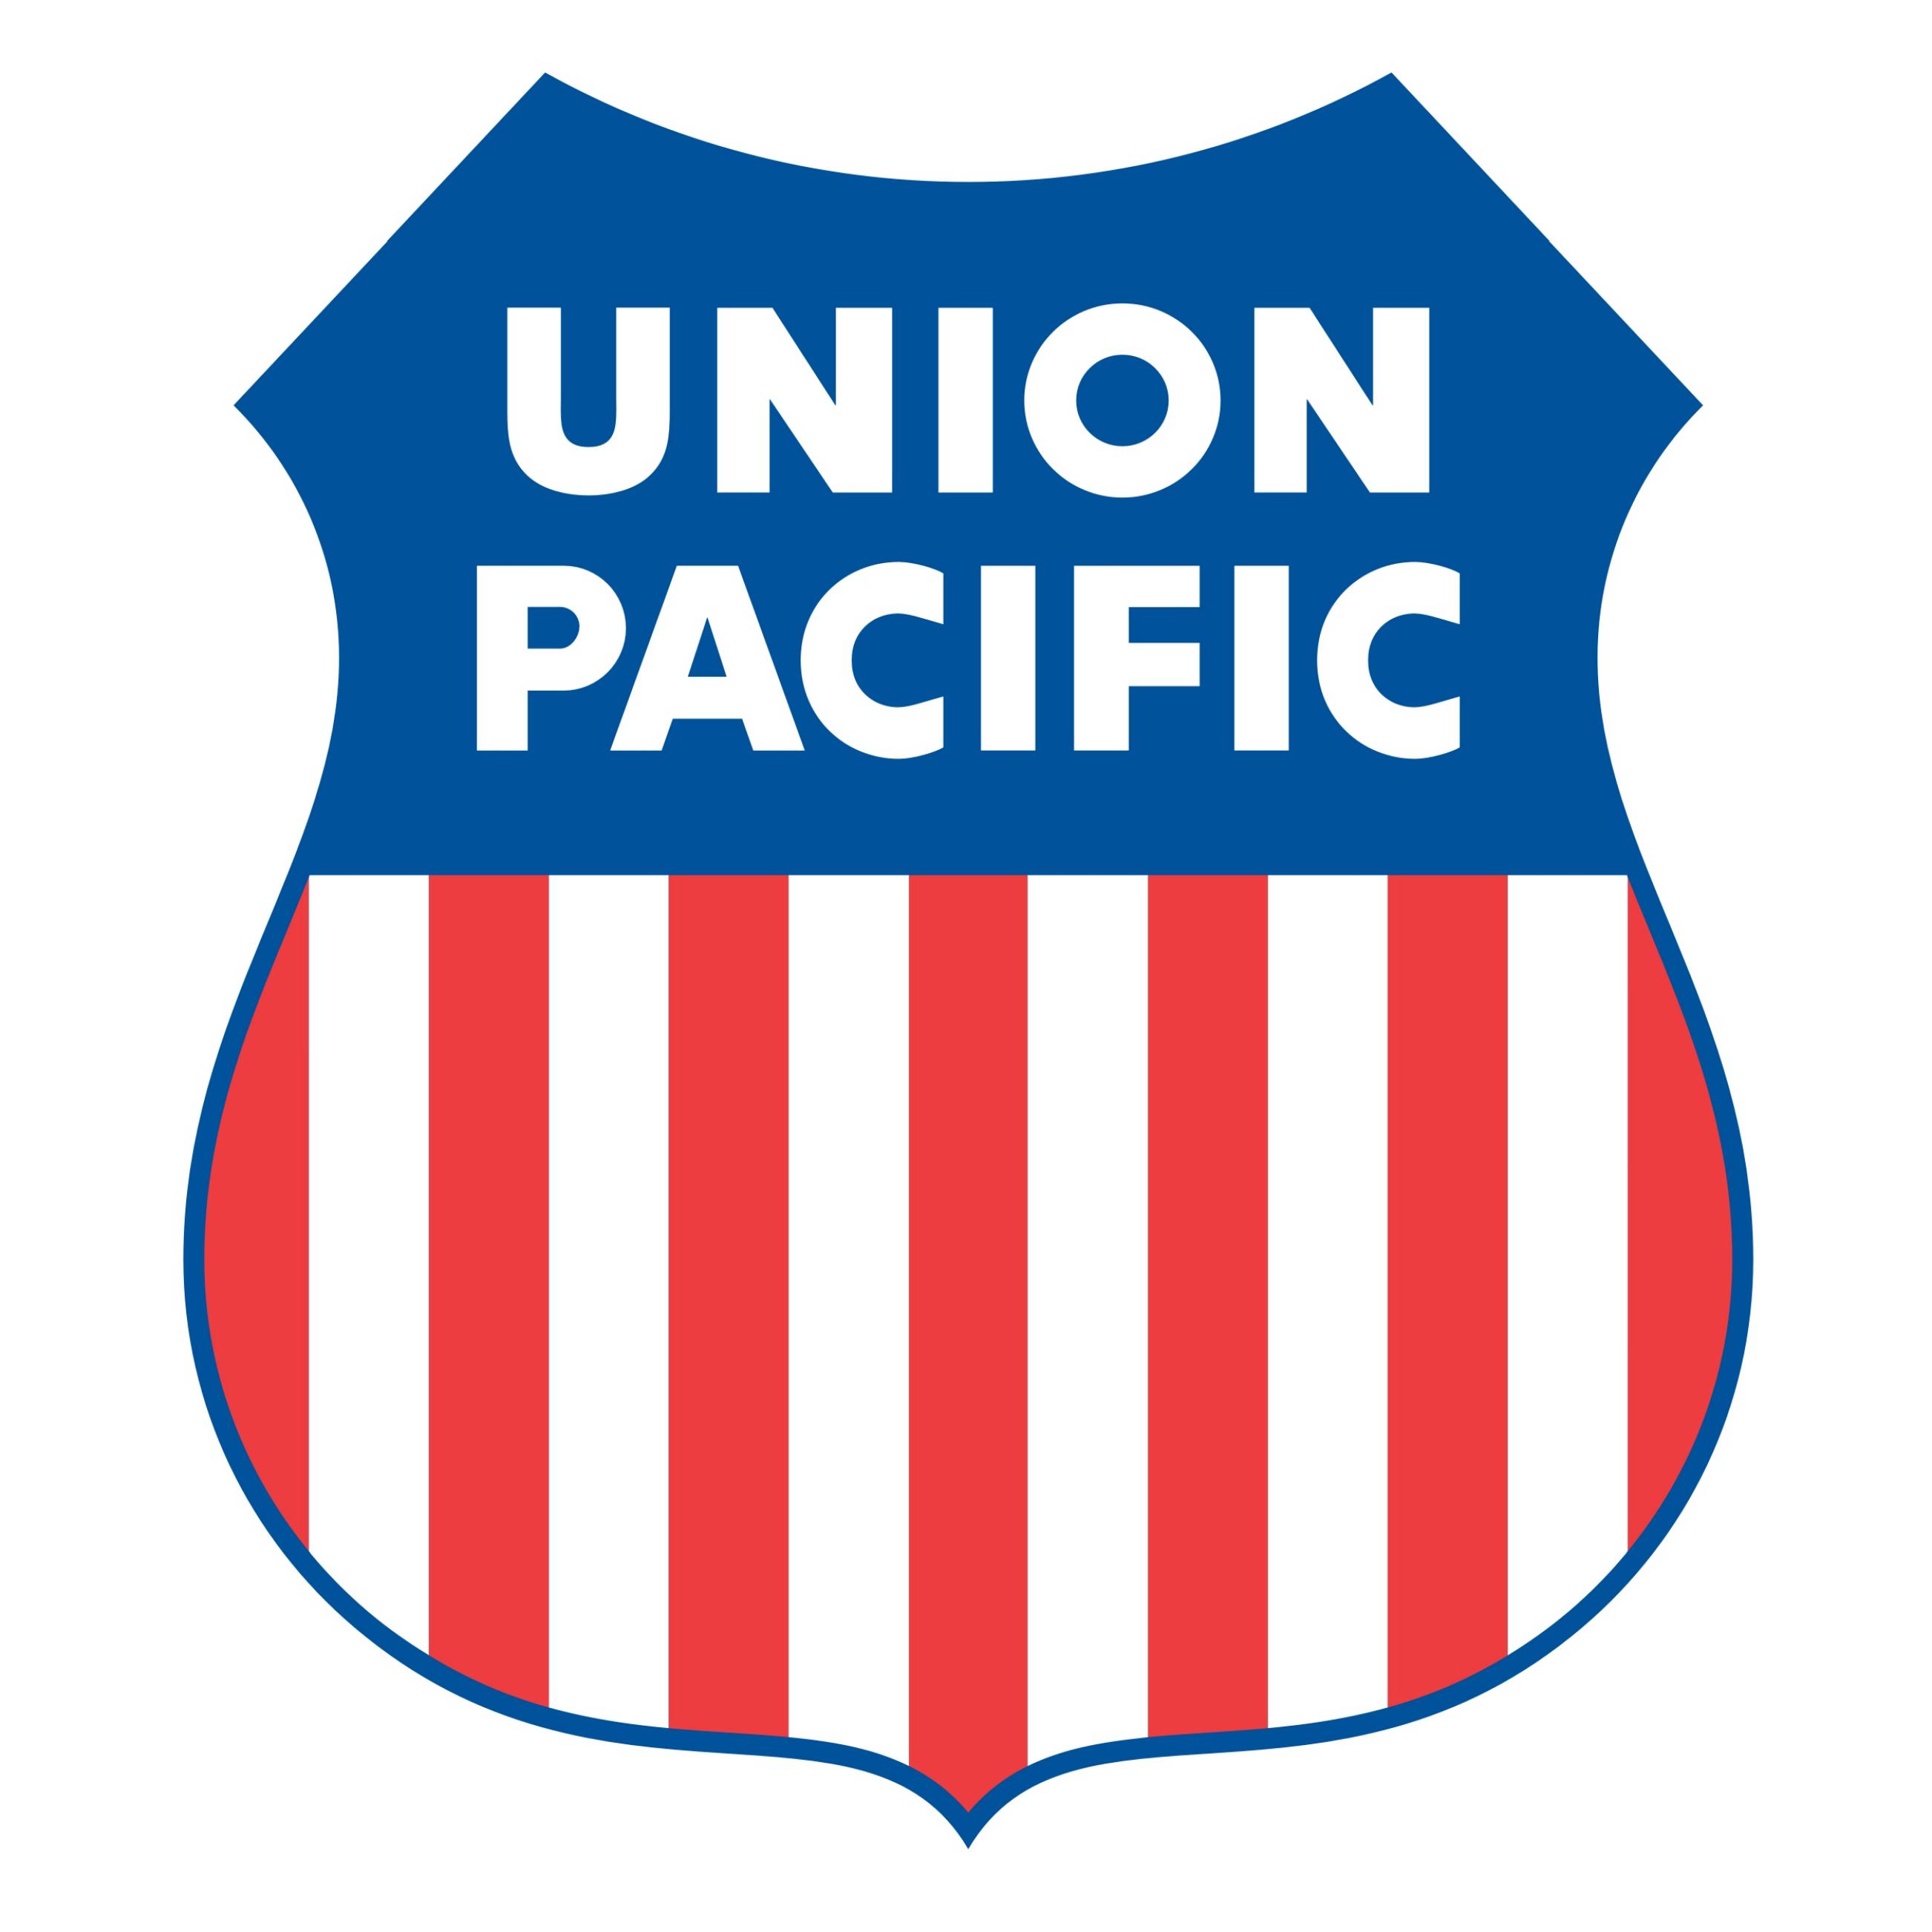 Filename: Union Pacific Railr